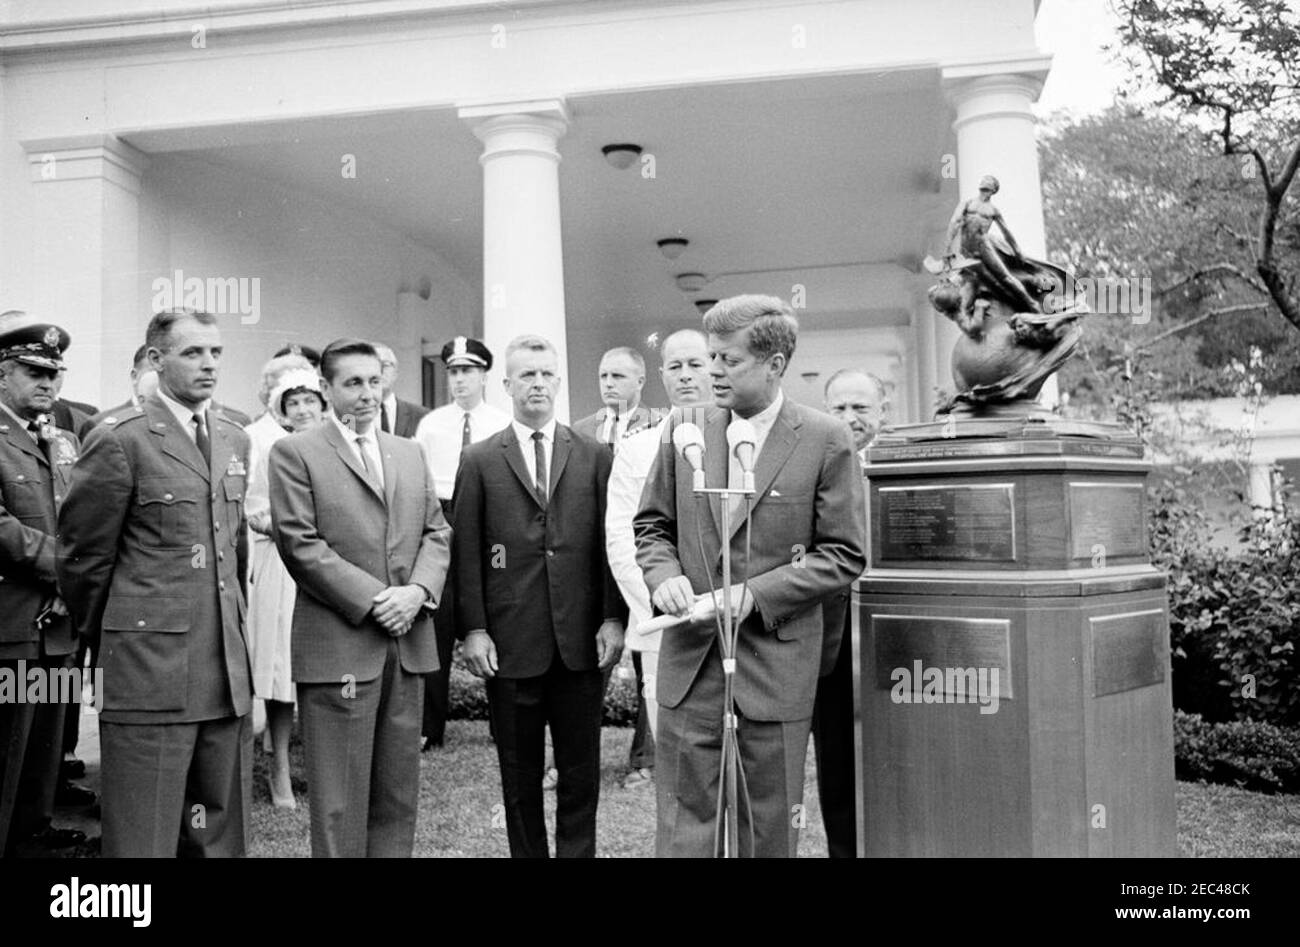 Presentación del Trofeo Collier 1961, 11:30AM. El presidente John F. Kennedy presenta el Trofeo Robert J. Collier 1961 a cuatro pilotos X-15, en nombre de la Asociación Nacional de Aeronáutica (NAA). Detrás del Presidente Kennedy están los receptores (L-R): El mayor Robert M. White (EE.UU Air Force), A. Scott Crossfield (Aviación de América del Norte), Joseph A. Walker (Administración Nacional de Aeronáutica y del espacio) y el Comandante Forrest S. Petersen (EE.UU Marina). También en la foto: Jefe de Estado mayor de la Fuerza Aérea de los Estados Unidos, General Curtis E. LeMay; Agente del Servicio Secreto de la Casa Blanca, Frank Yeager. Ala oeste Foto de stock